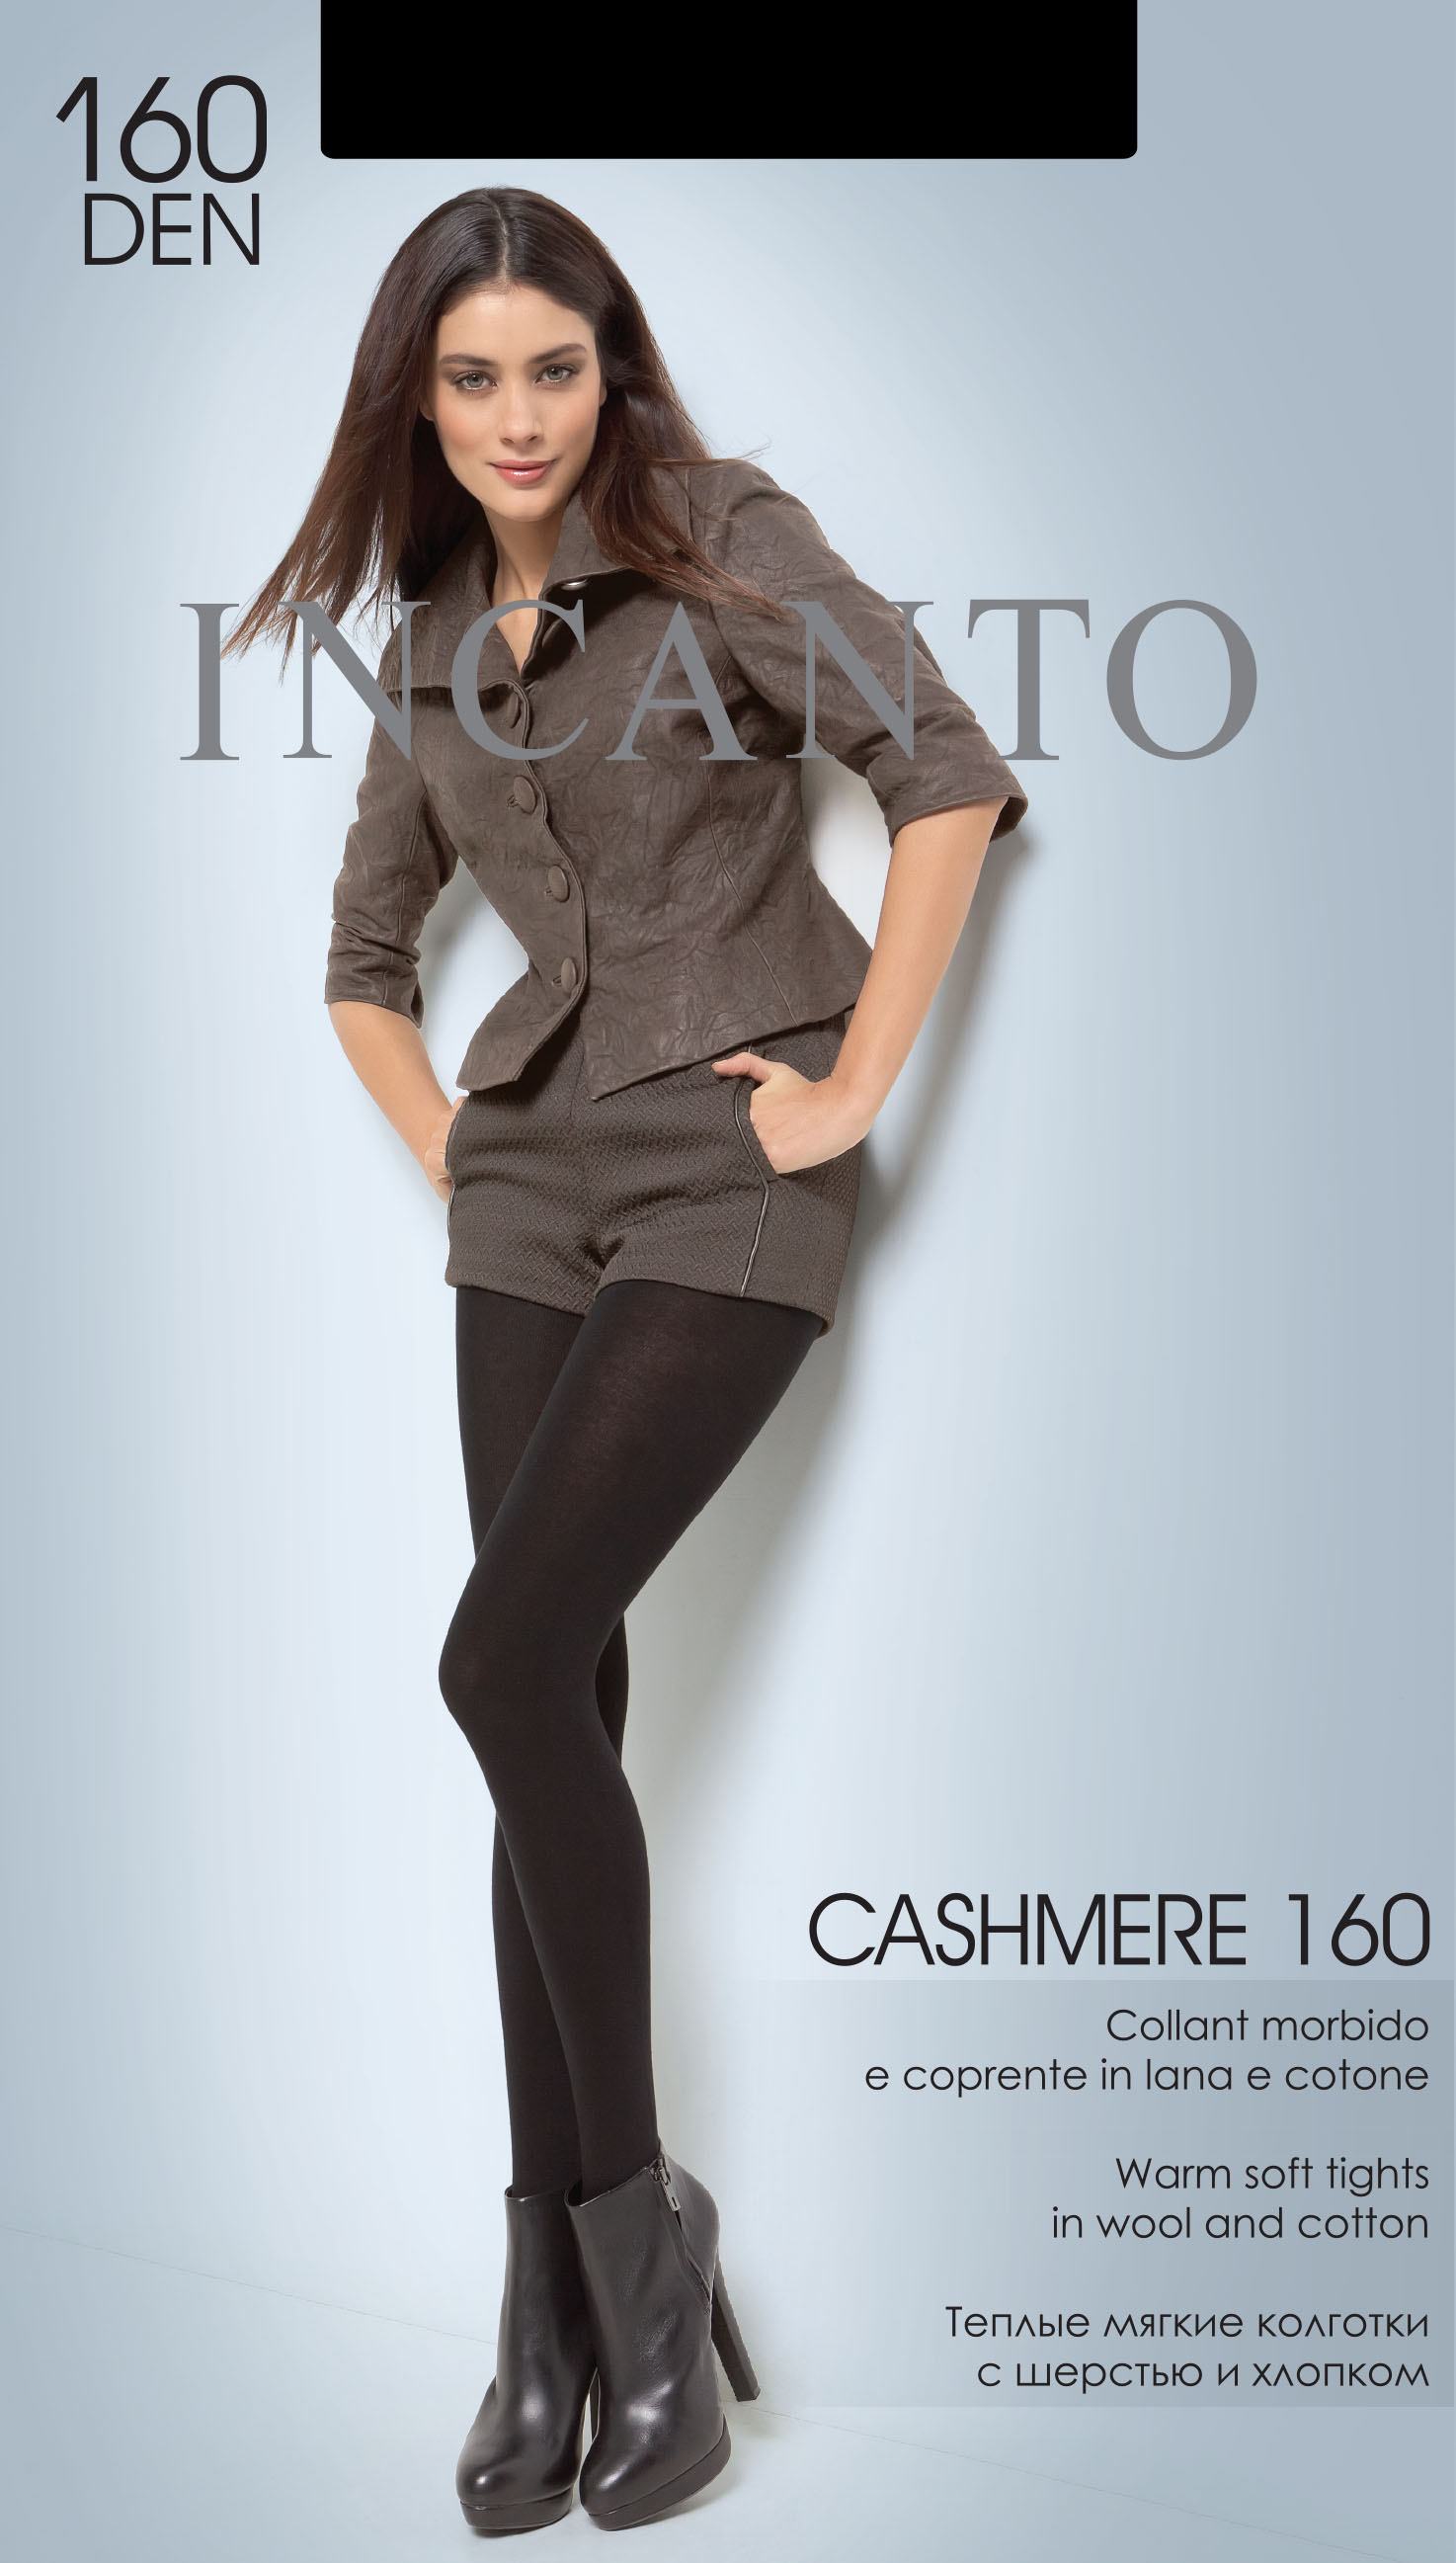 Колготки Incanto Cashmere 160 купить недорого в интернет-магазине Для  Подружек